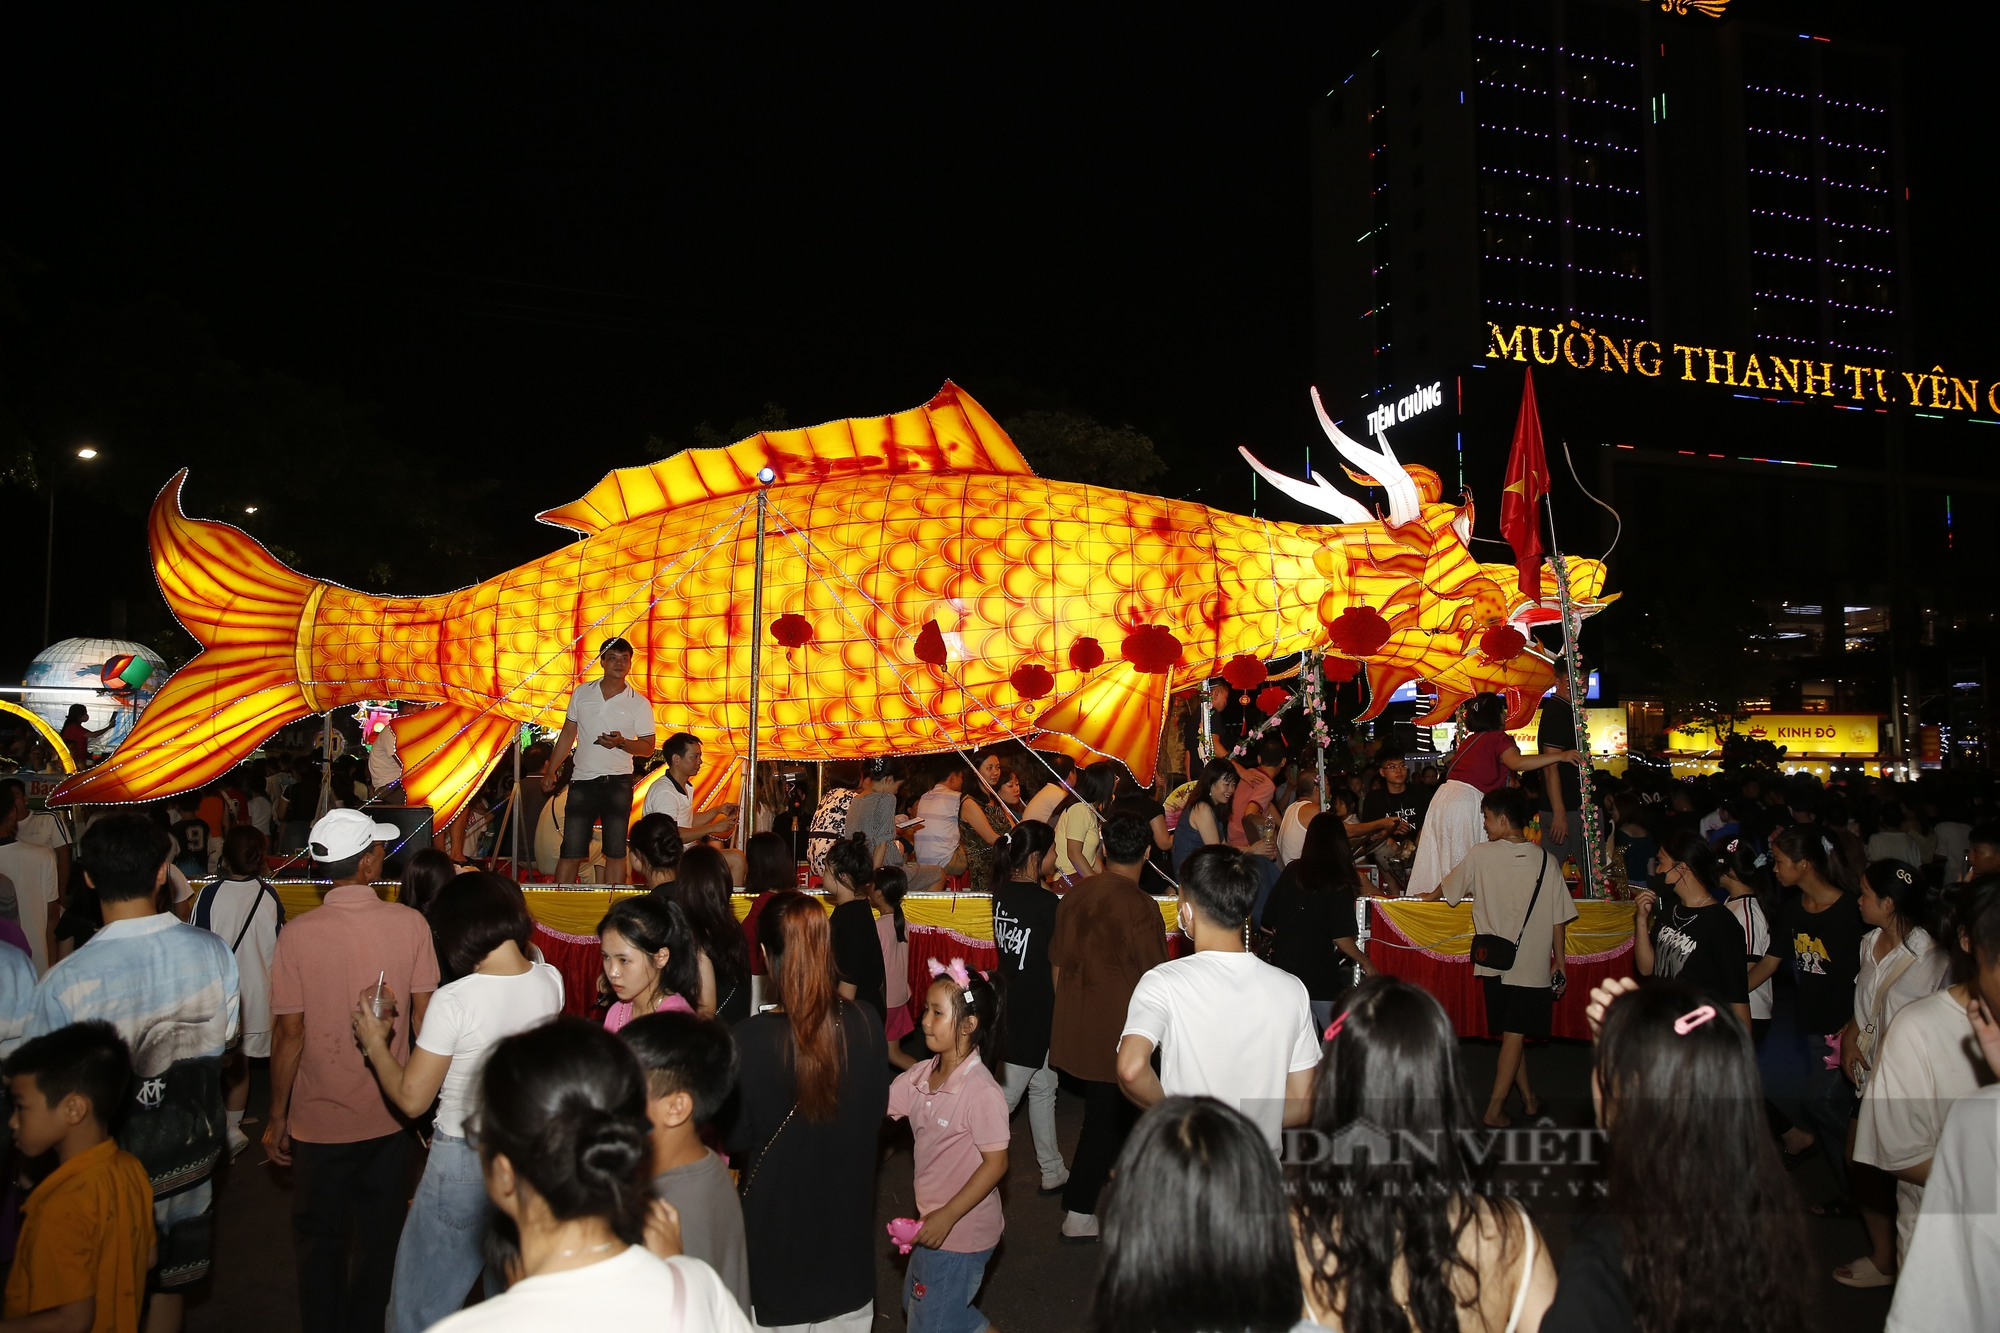 Chiêm ngưỡng những mô hình đèn Trung thu khổng lồ tại Lễ hội thành Tuyên năm 2023 - Ảnh 7.